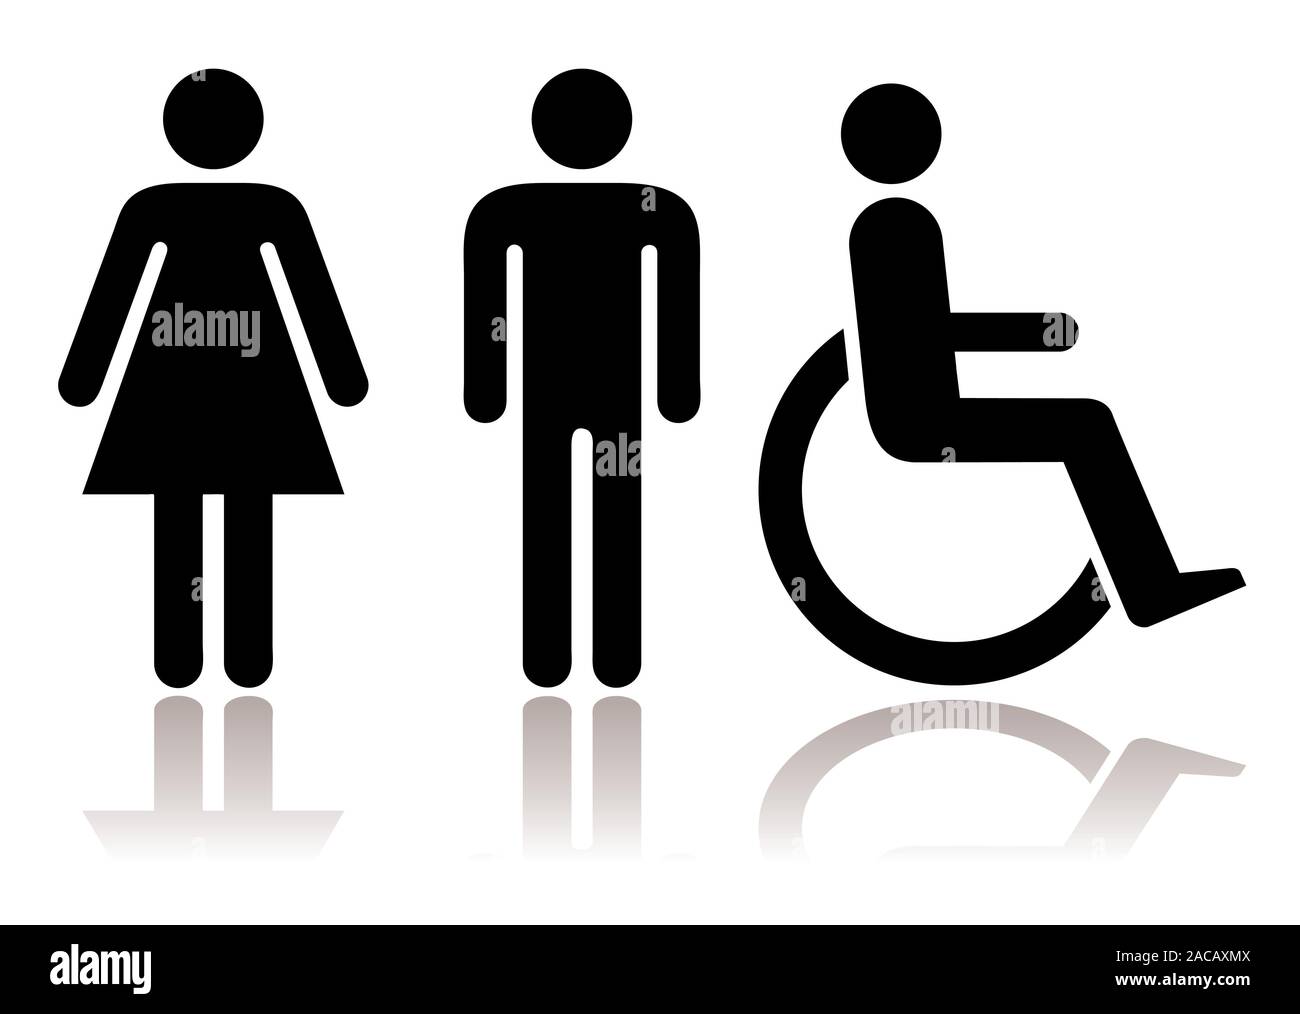 Simboli toilette immagini e fotografie stock ad alta risoluzione - Alamy